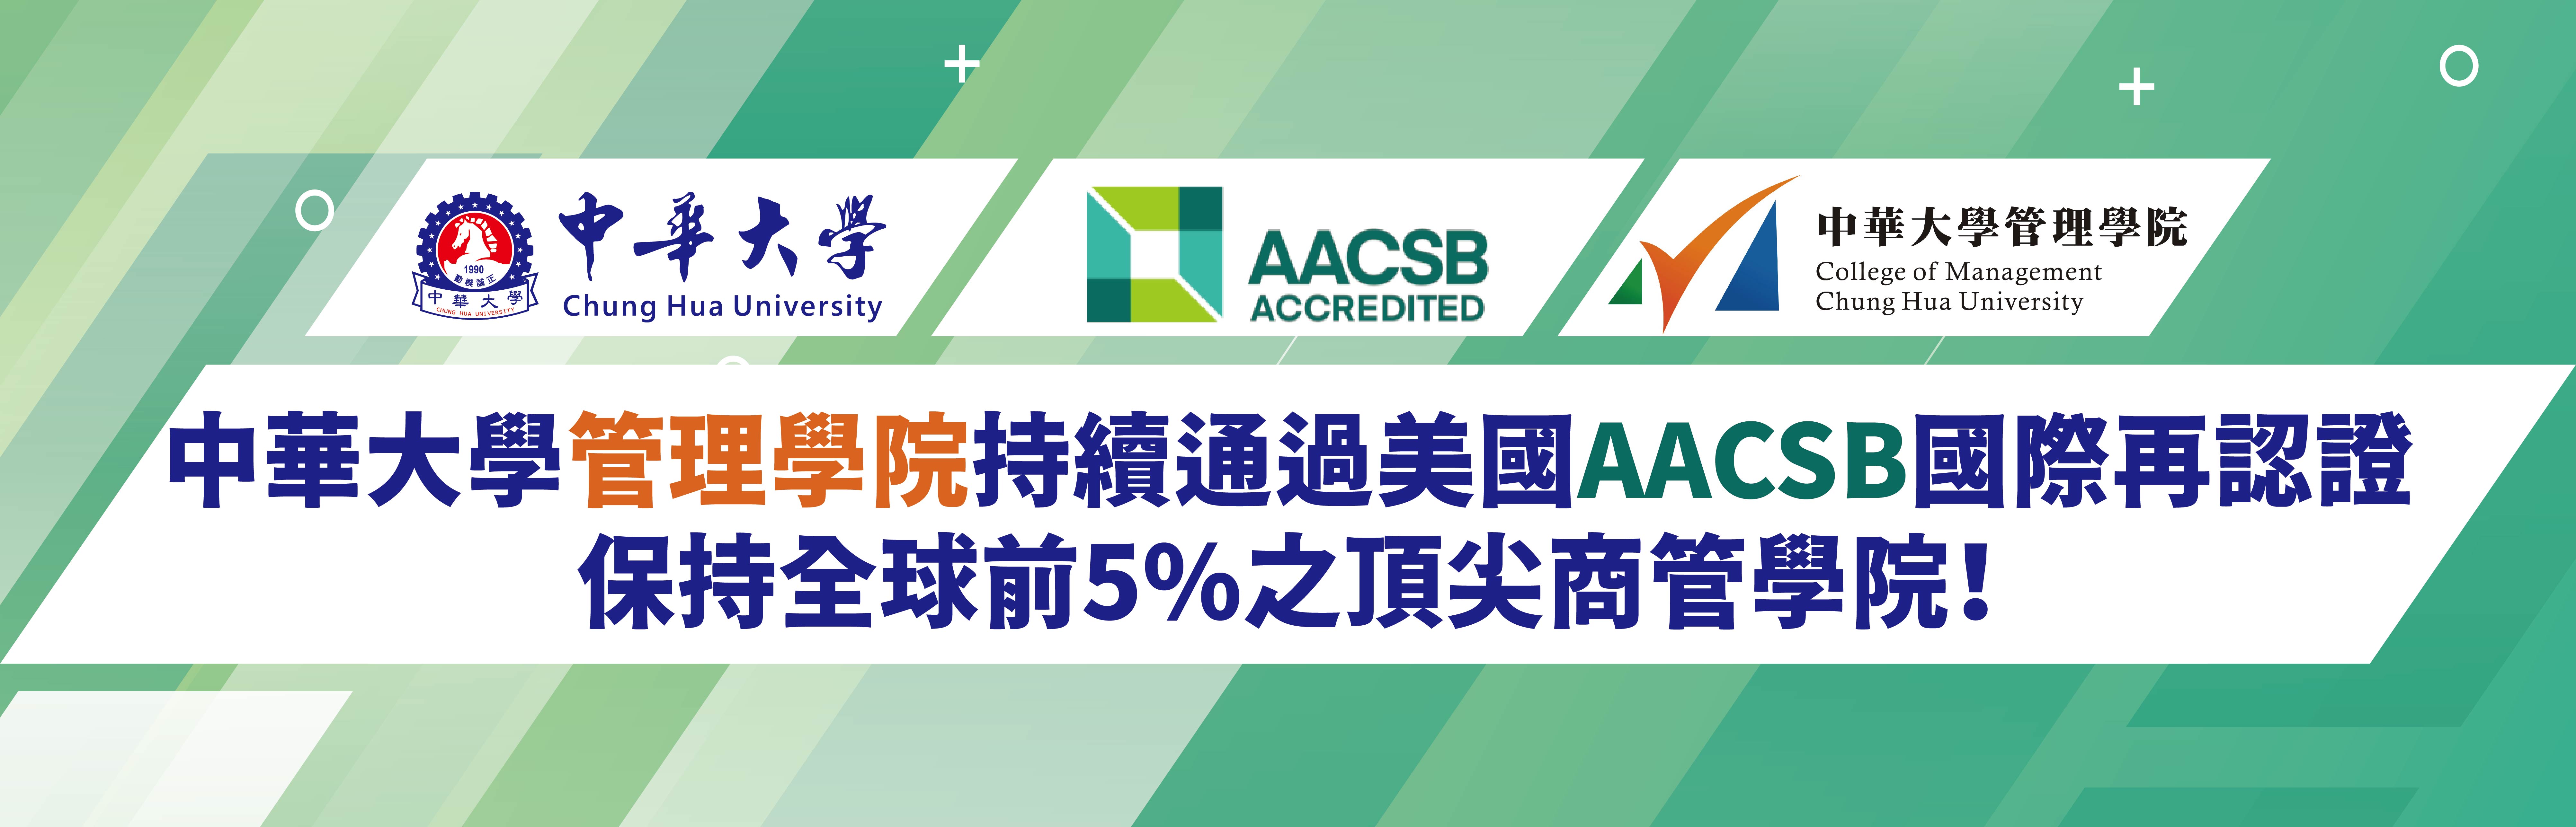 中華大學管理學院持續通過美國AACSB國際再認證 保持全球前5%之頂尖商管學院！